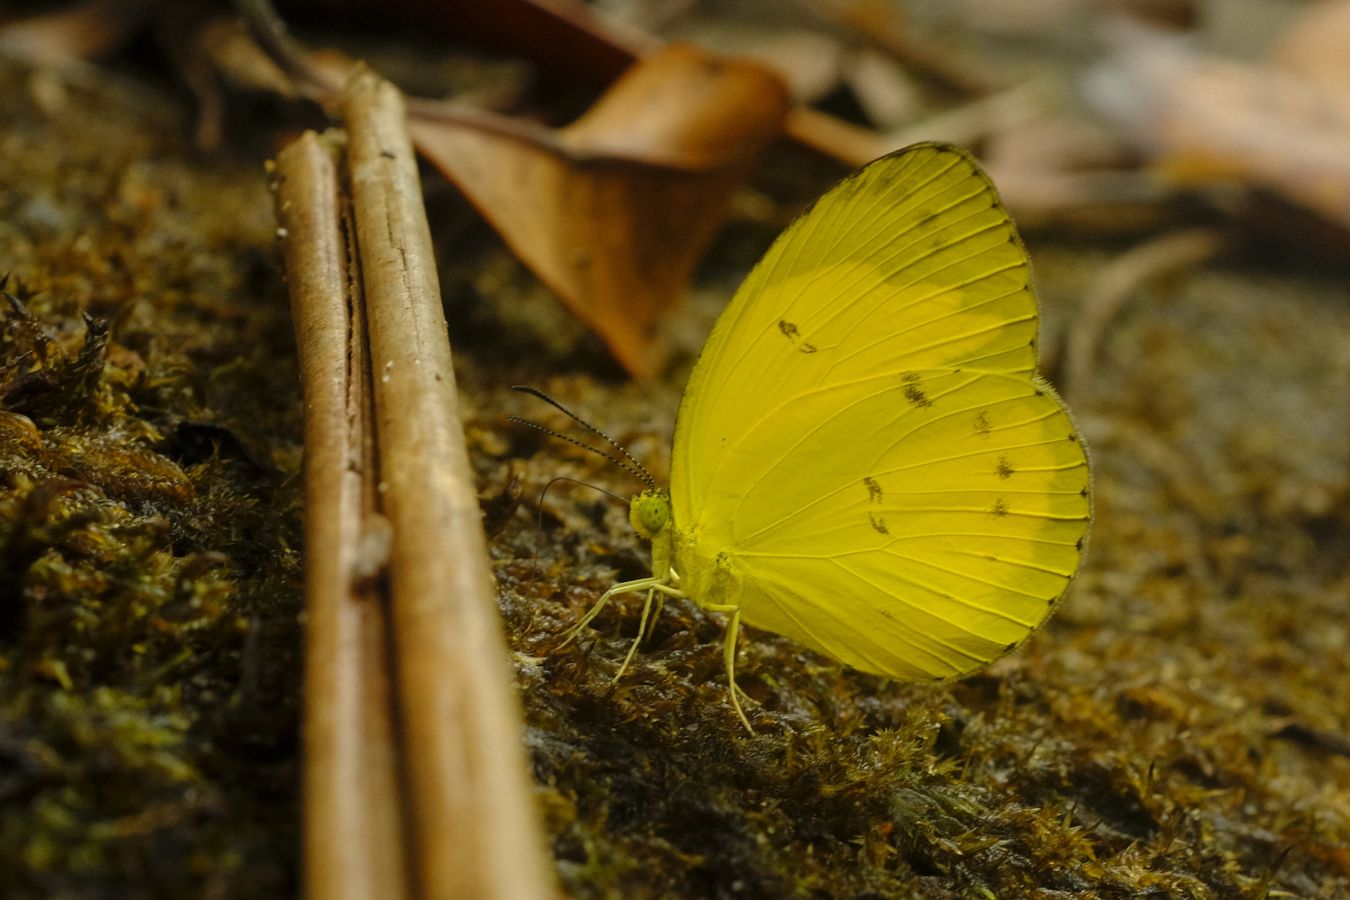 Malayan Grass Yellow Butterfly { Earema Nicevillei }